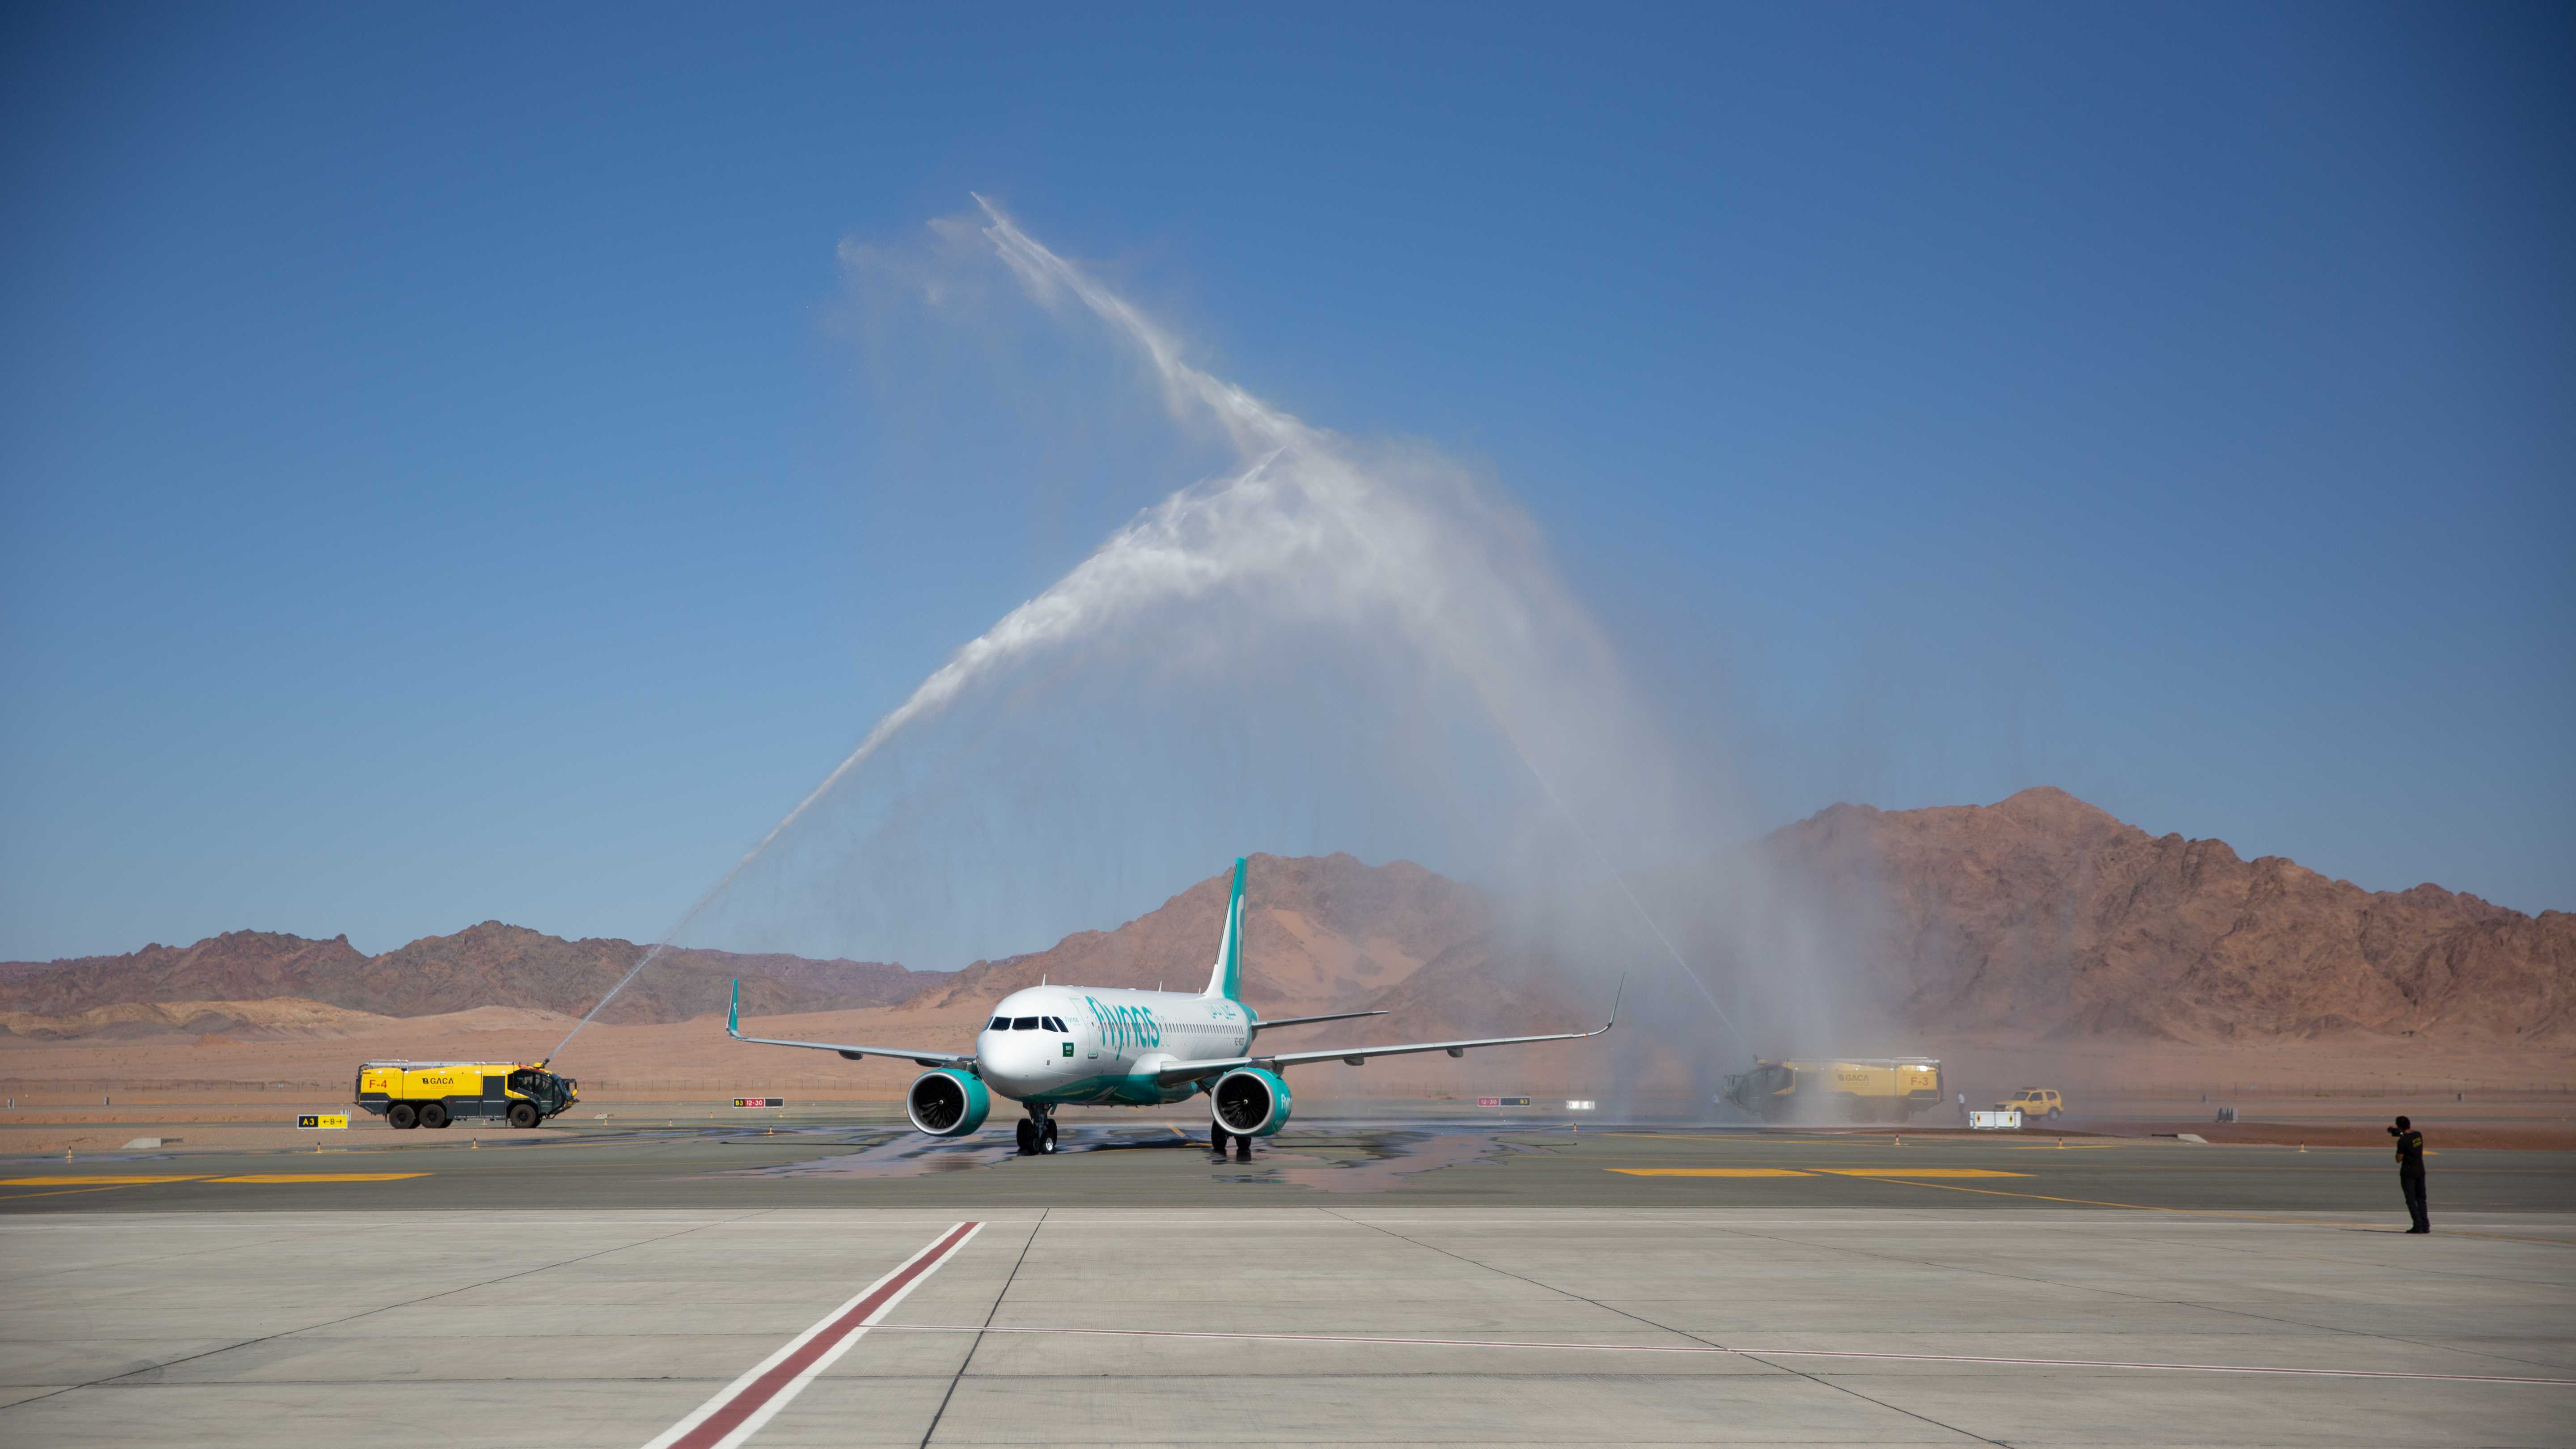 وصول أول رحلة طيران دولية مباشرة إلى مطار العُلا الدولي الجمعة